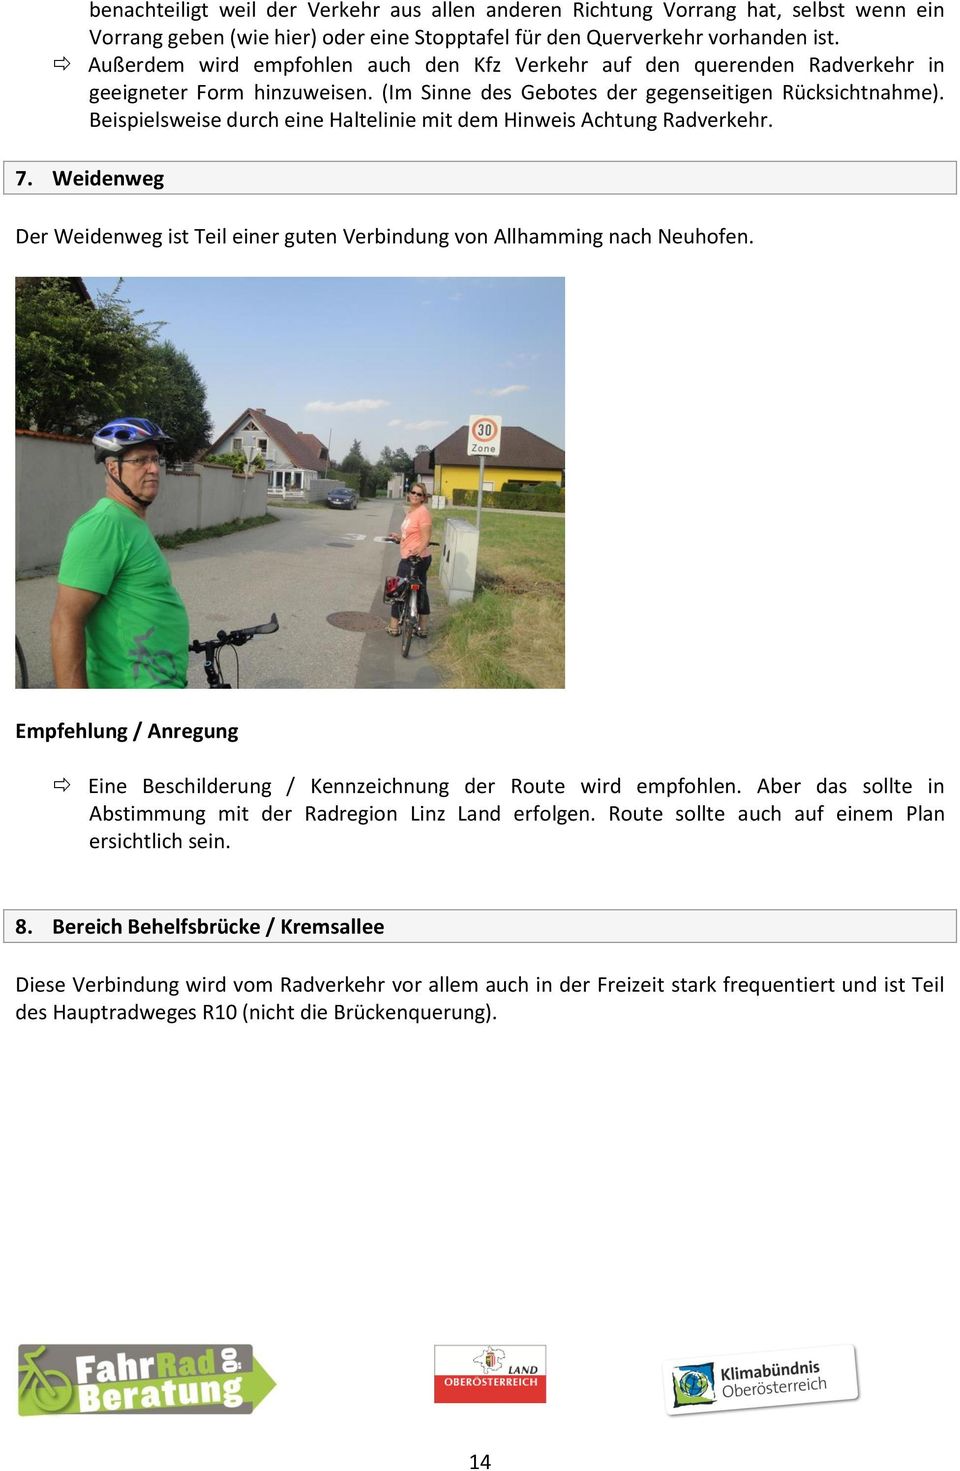 Beispielsweise durch eine Haltelinie mit dem Hinweis Achtung Radverkehr. 7. Weidenweg Der Weidenweg ist Teil einer guten Verbindung von Allhamming nach Neuhofen.